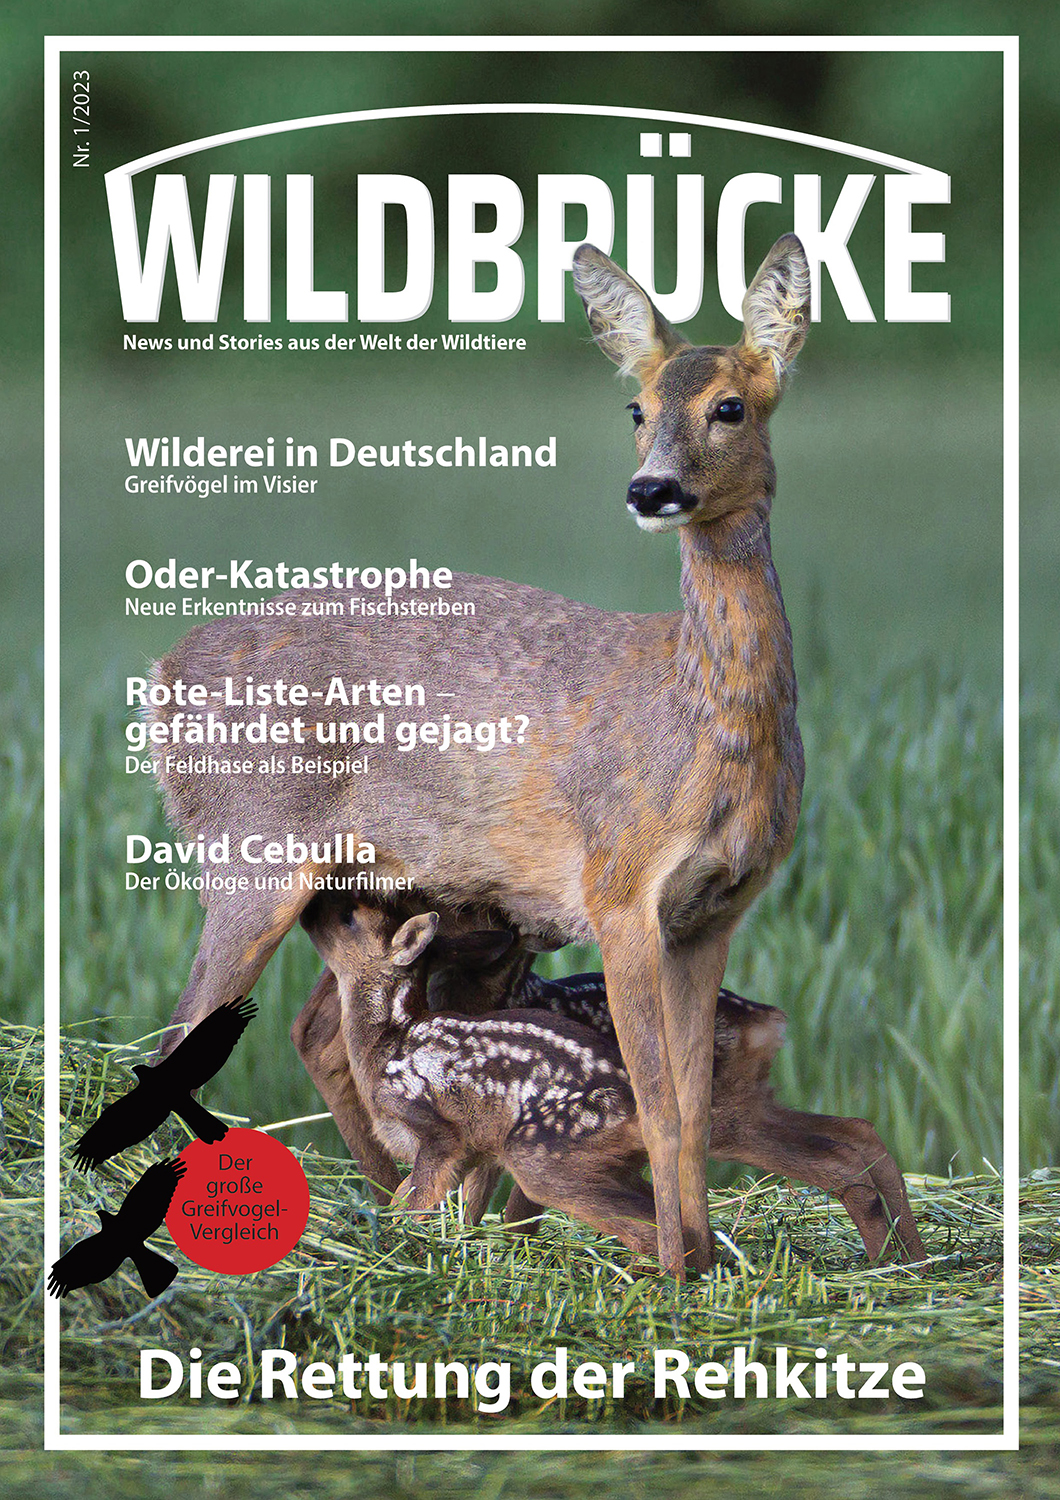 Wildbrücke Magazin News und Stories aus der Welt der Wildtiere